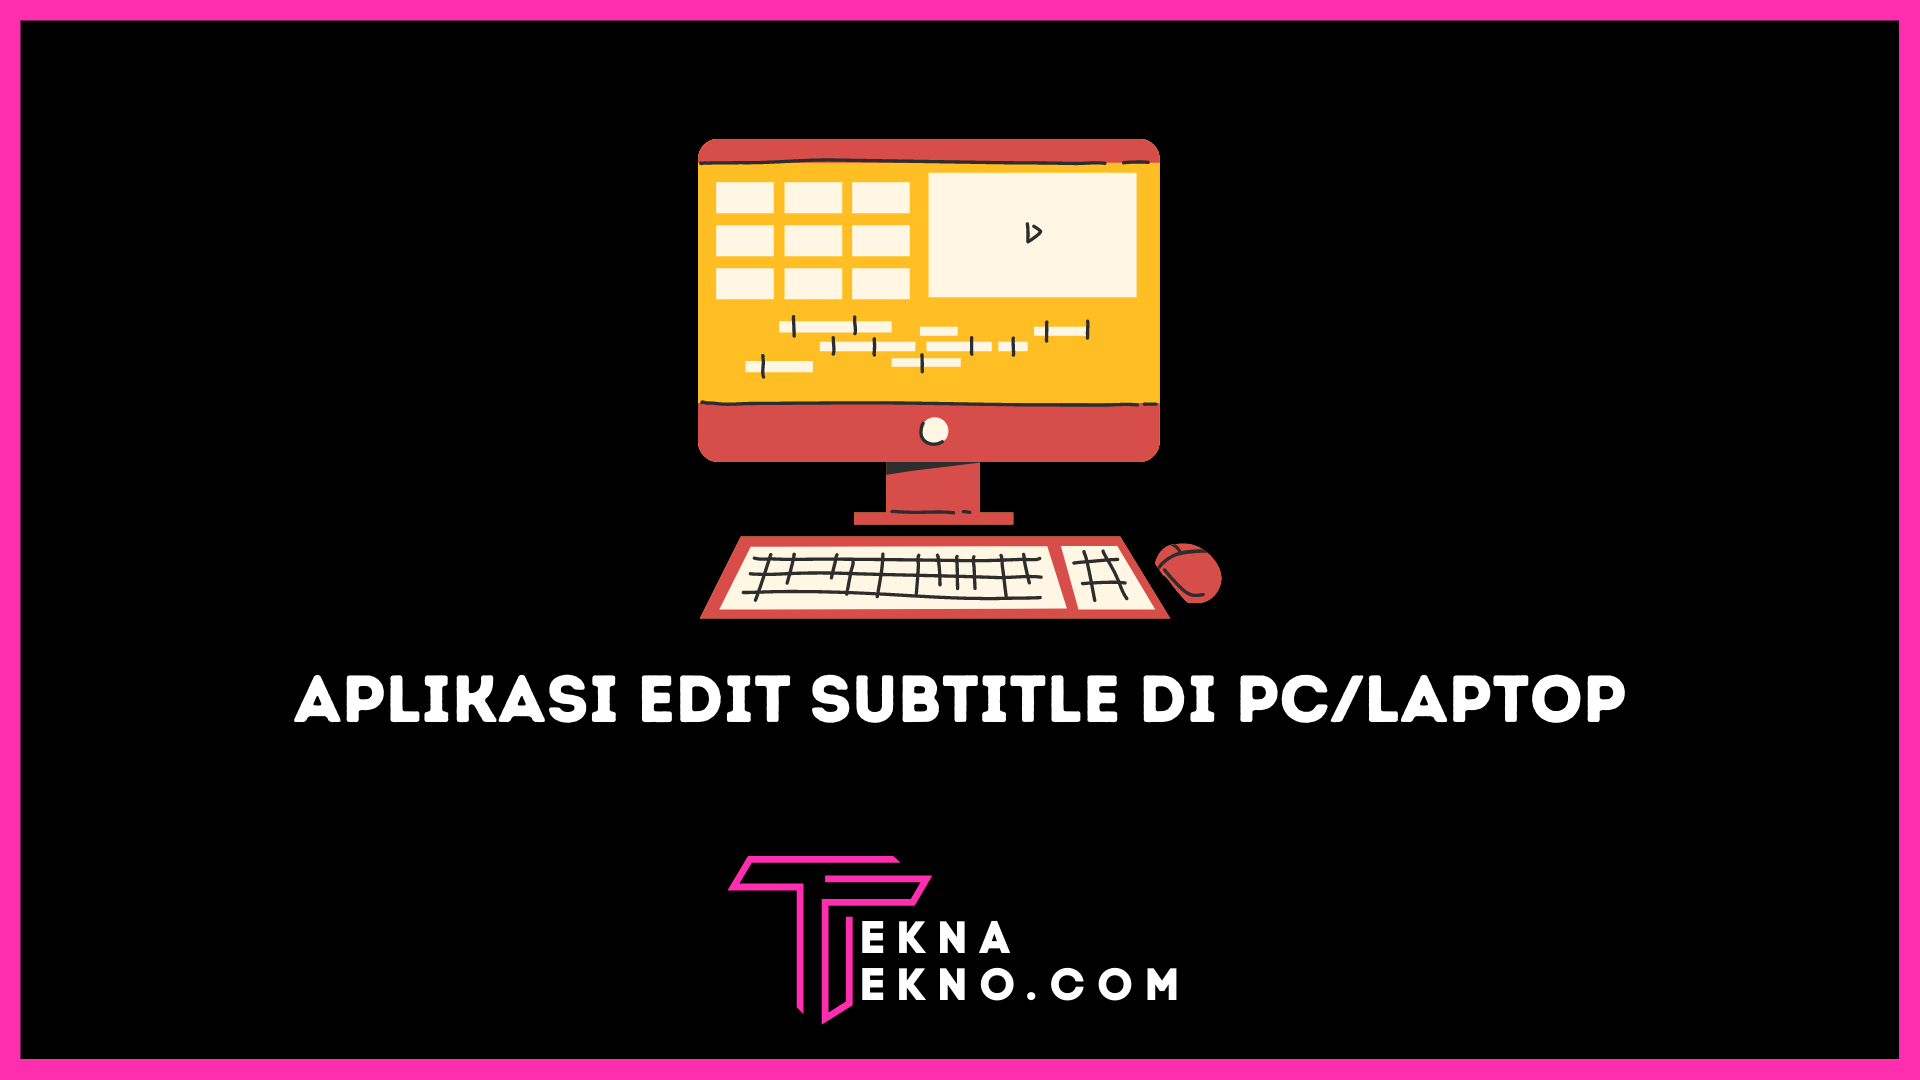 10 Aplikasi Pembuat Subtitle Gratis di PC atau Laptop